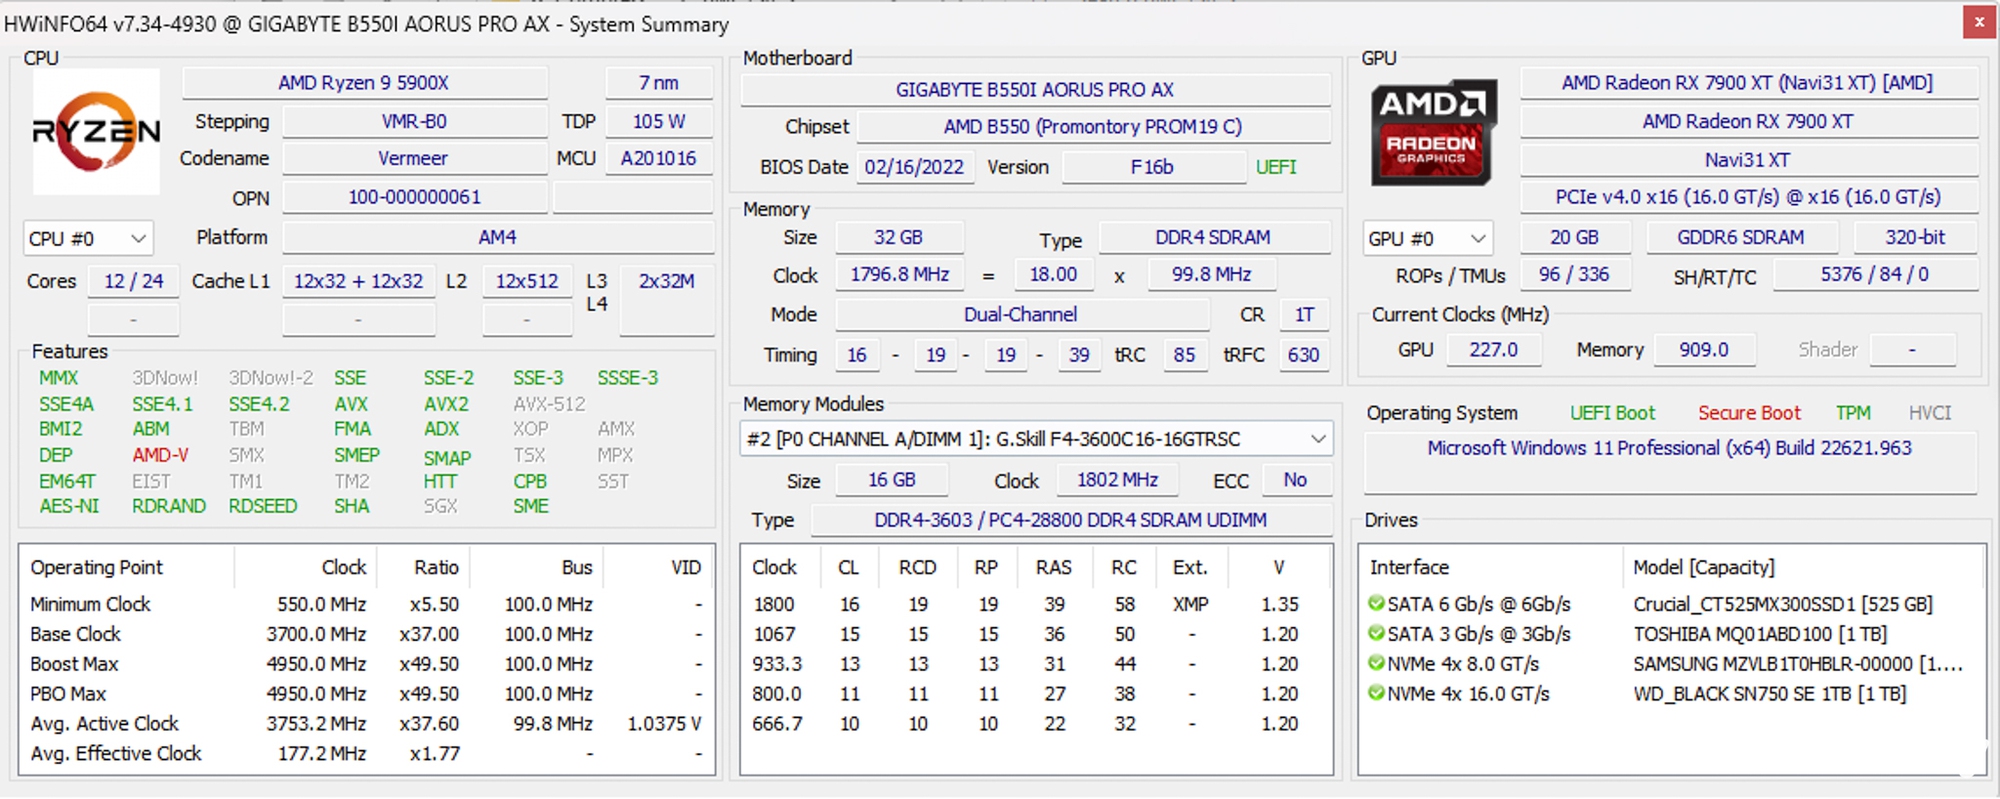 ‏Đánh giá AMD Radeon RX 7900 XT: Lựa chọn cho cấu hình chơi game 4K với mức giá hợp lý‏ - Ảnh 6.